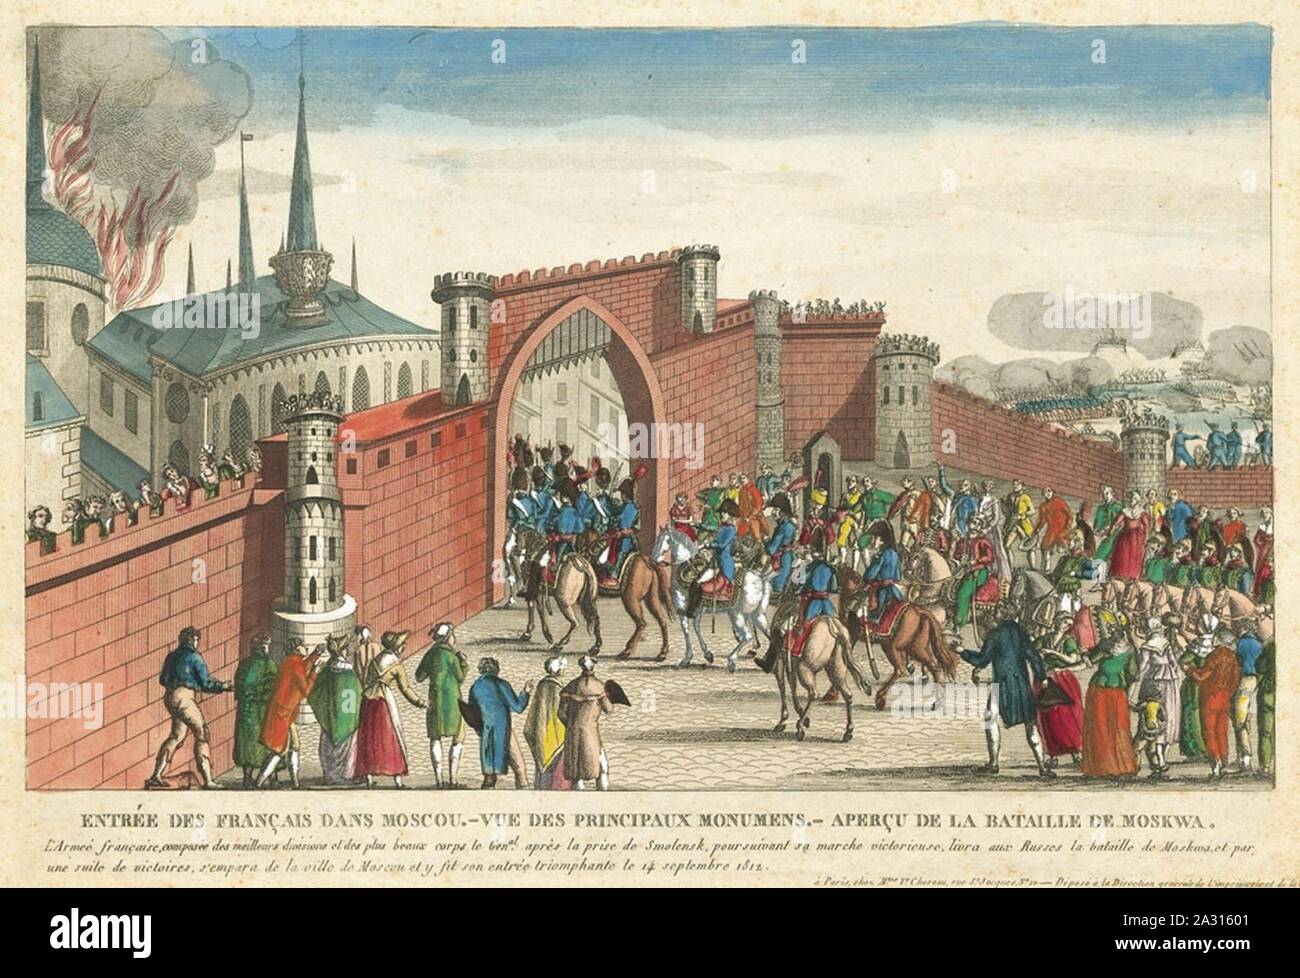 Entrée des Français dans Moscou 1812. Foto Stock